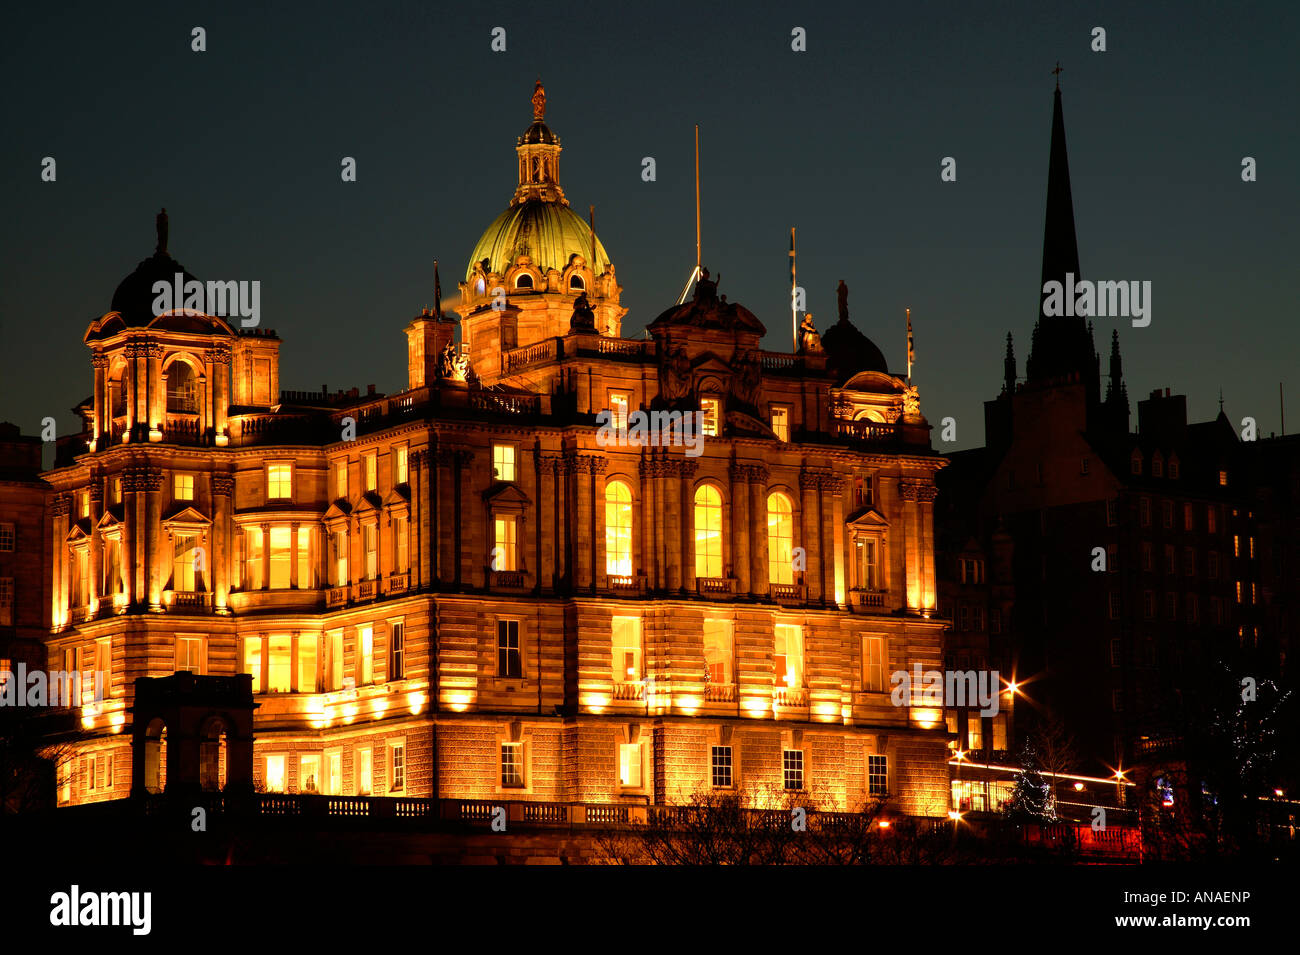 illuminated Lloyds Banking Group Bank of Scotland (formerly Hbos) headquarters, Edinburgh, Scotland, UK, Europe Stock Photo